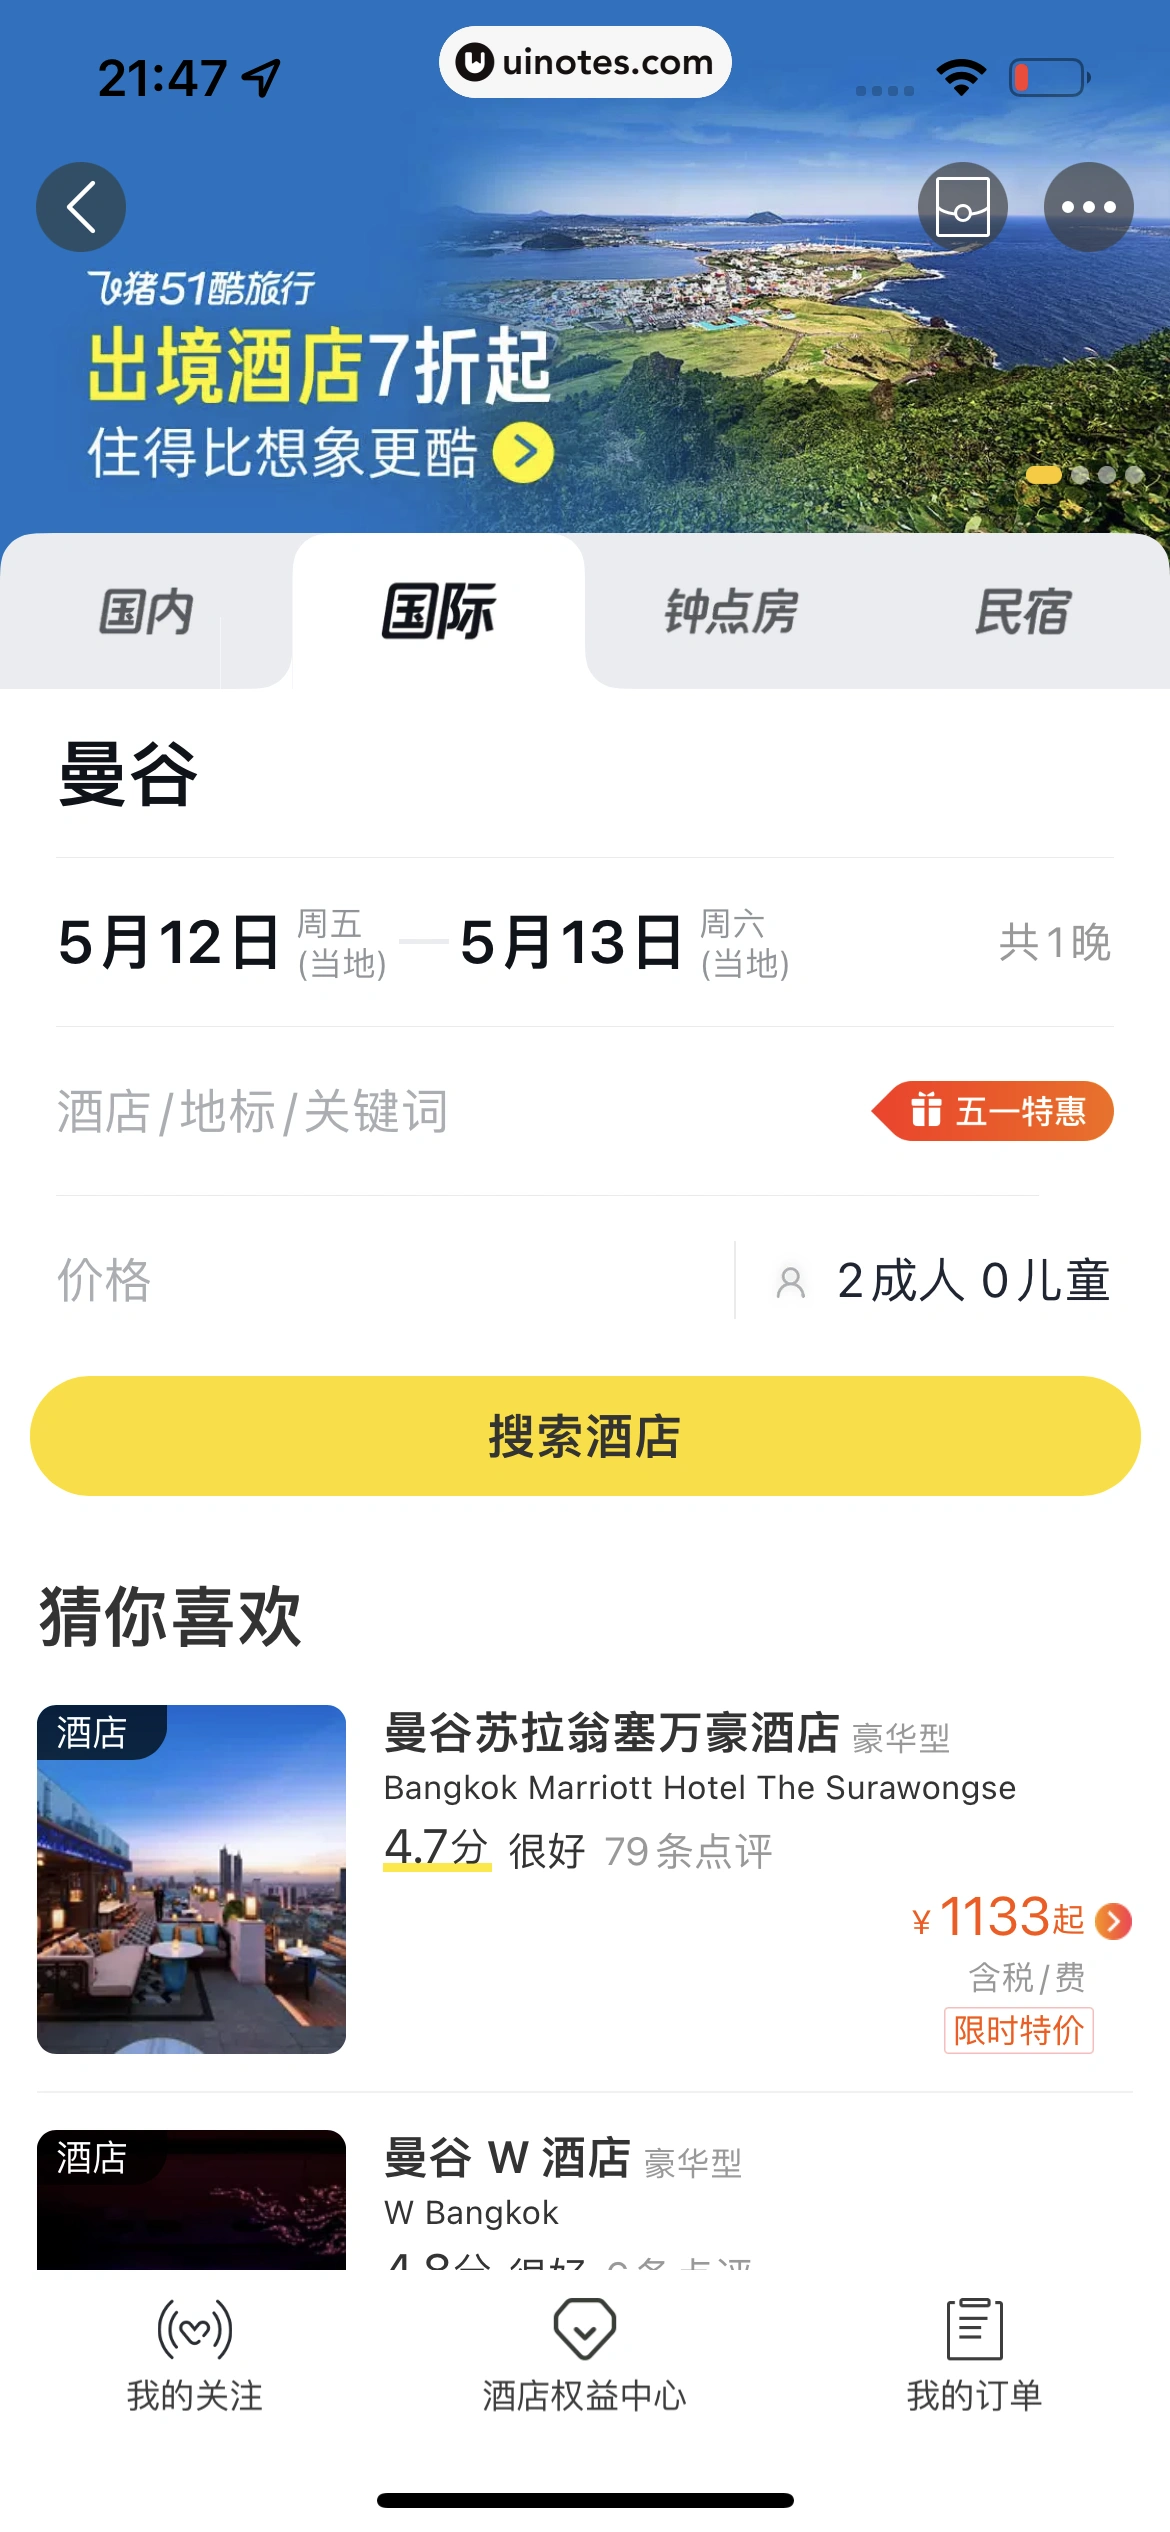 飞猪旅行 App 截图 262 - UI Notes